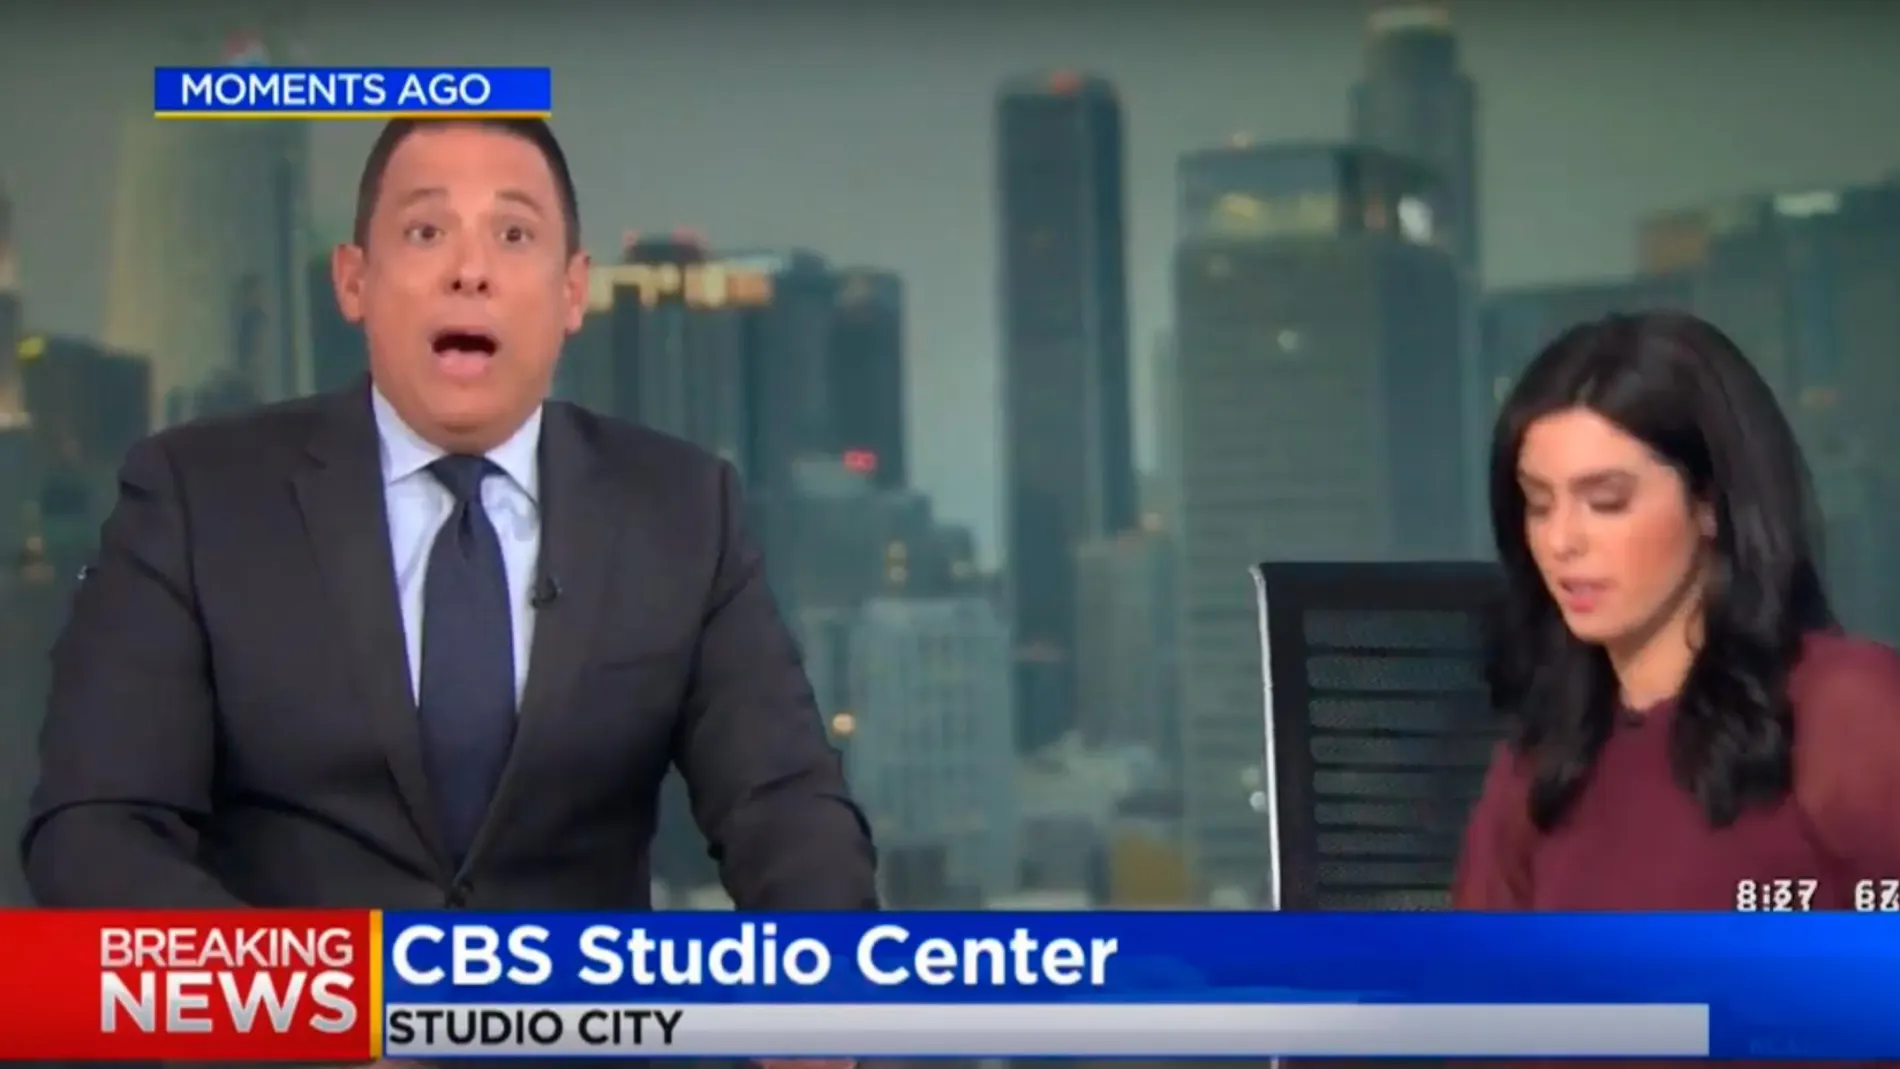 Informativo de las 9 de la CBS en Los Ángeles, cuando un terremoto irrumpe en pleno directo